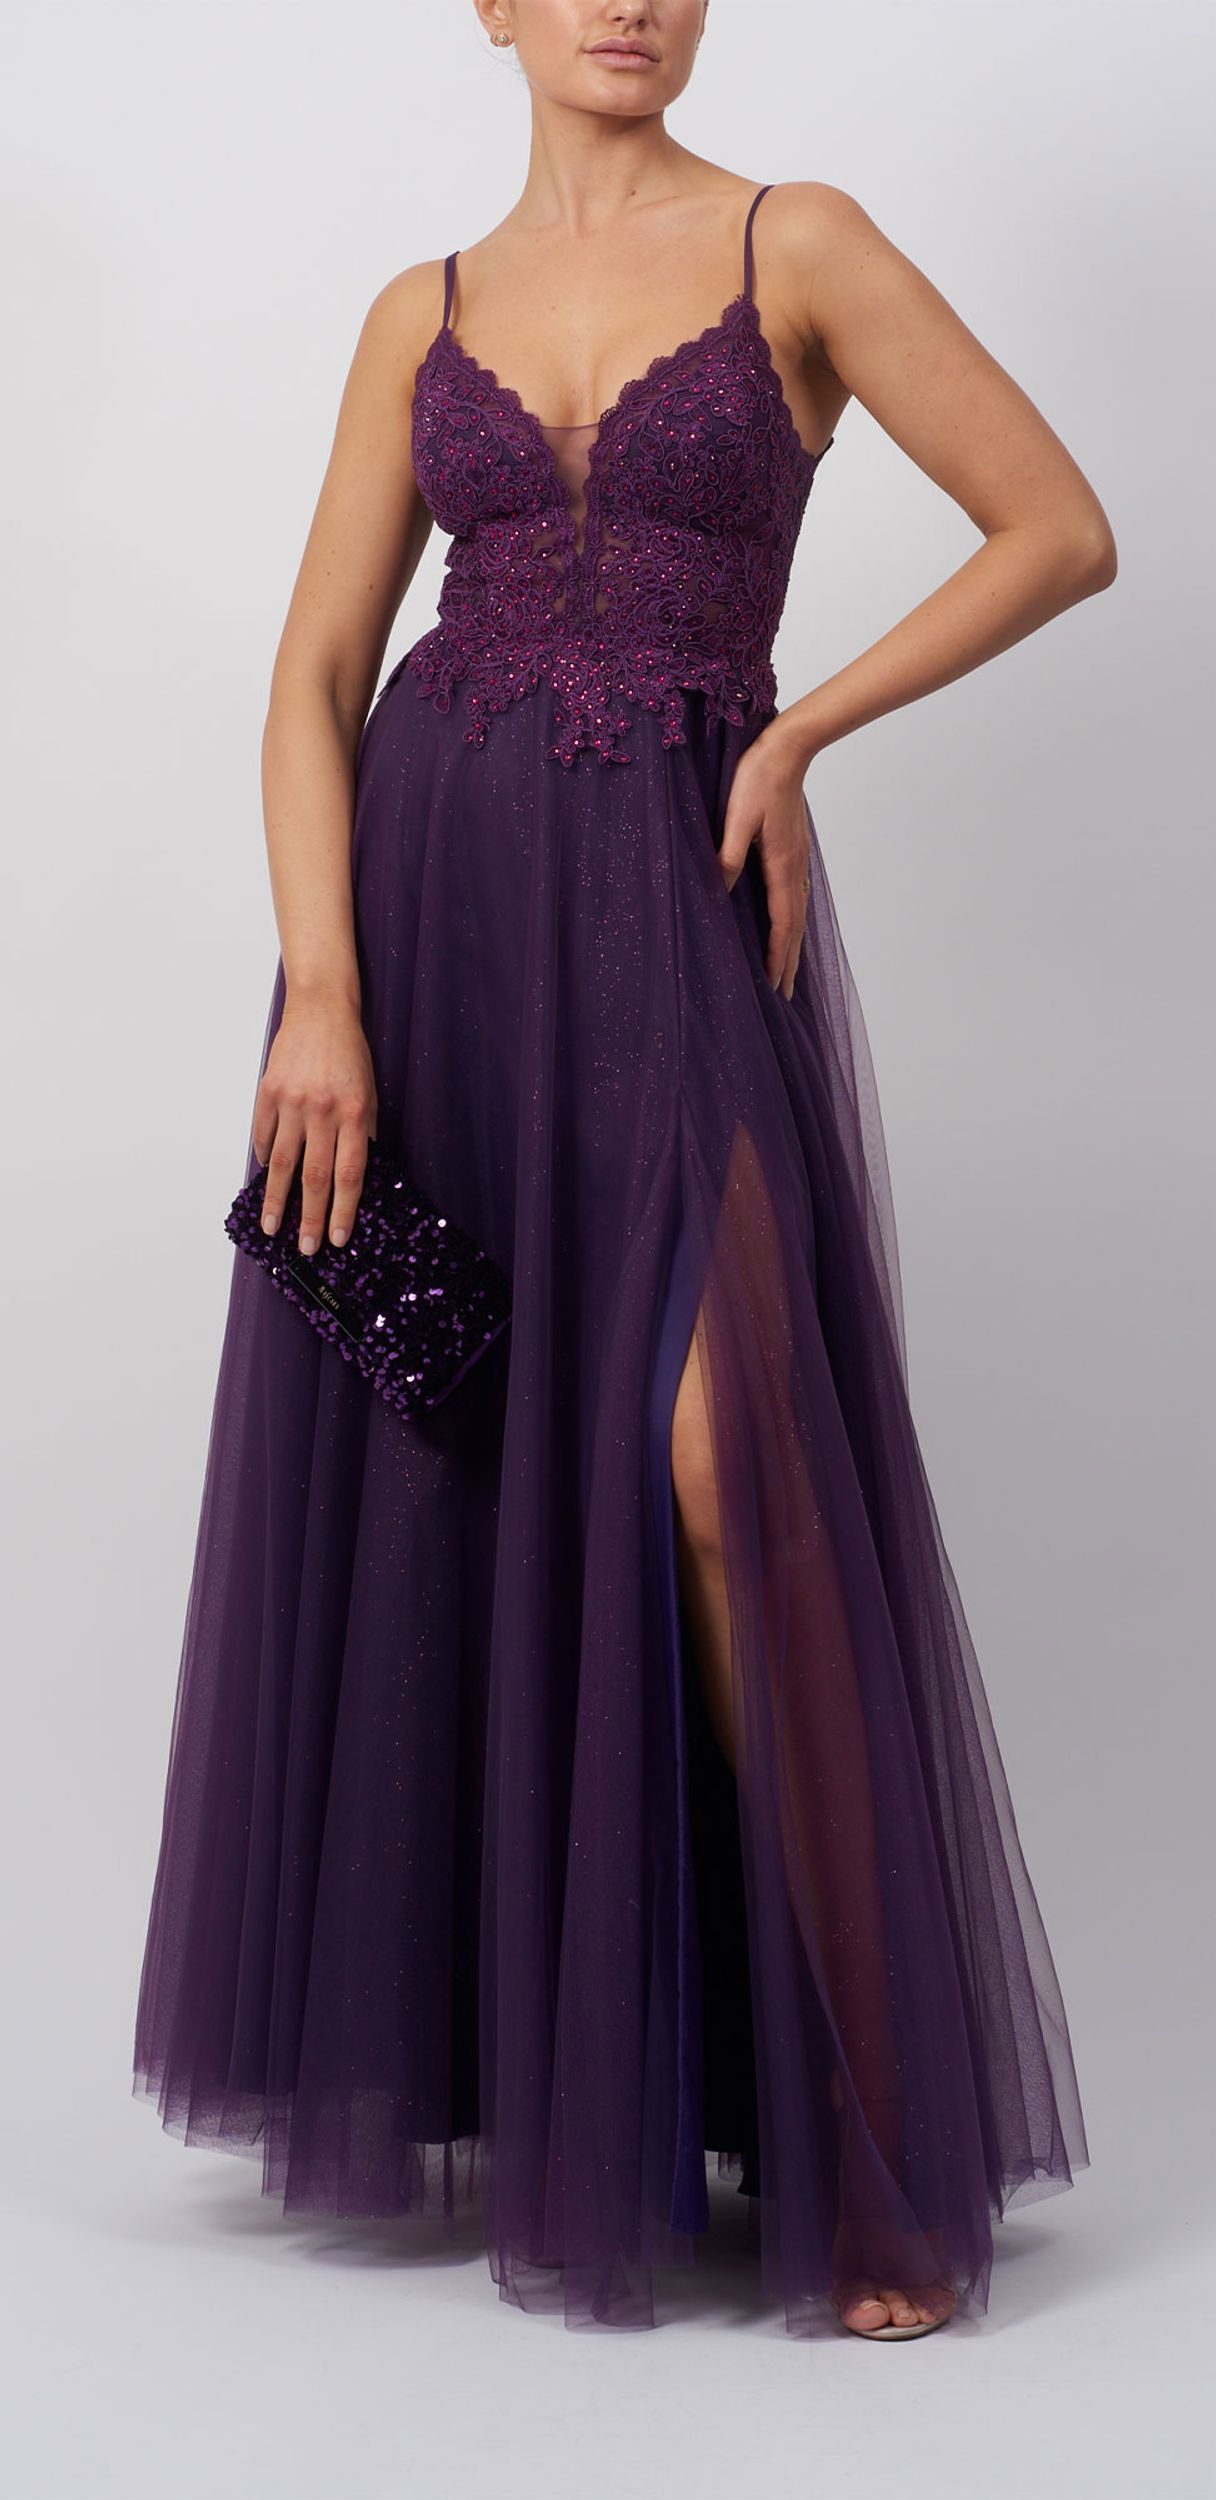  |  Kleid lang festlich | 44 | Dark Purple